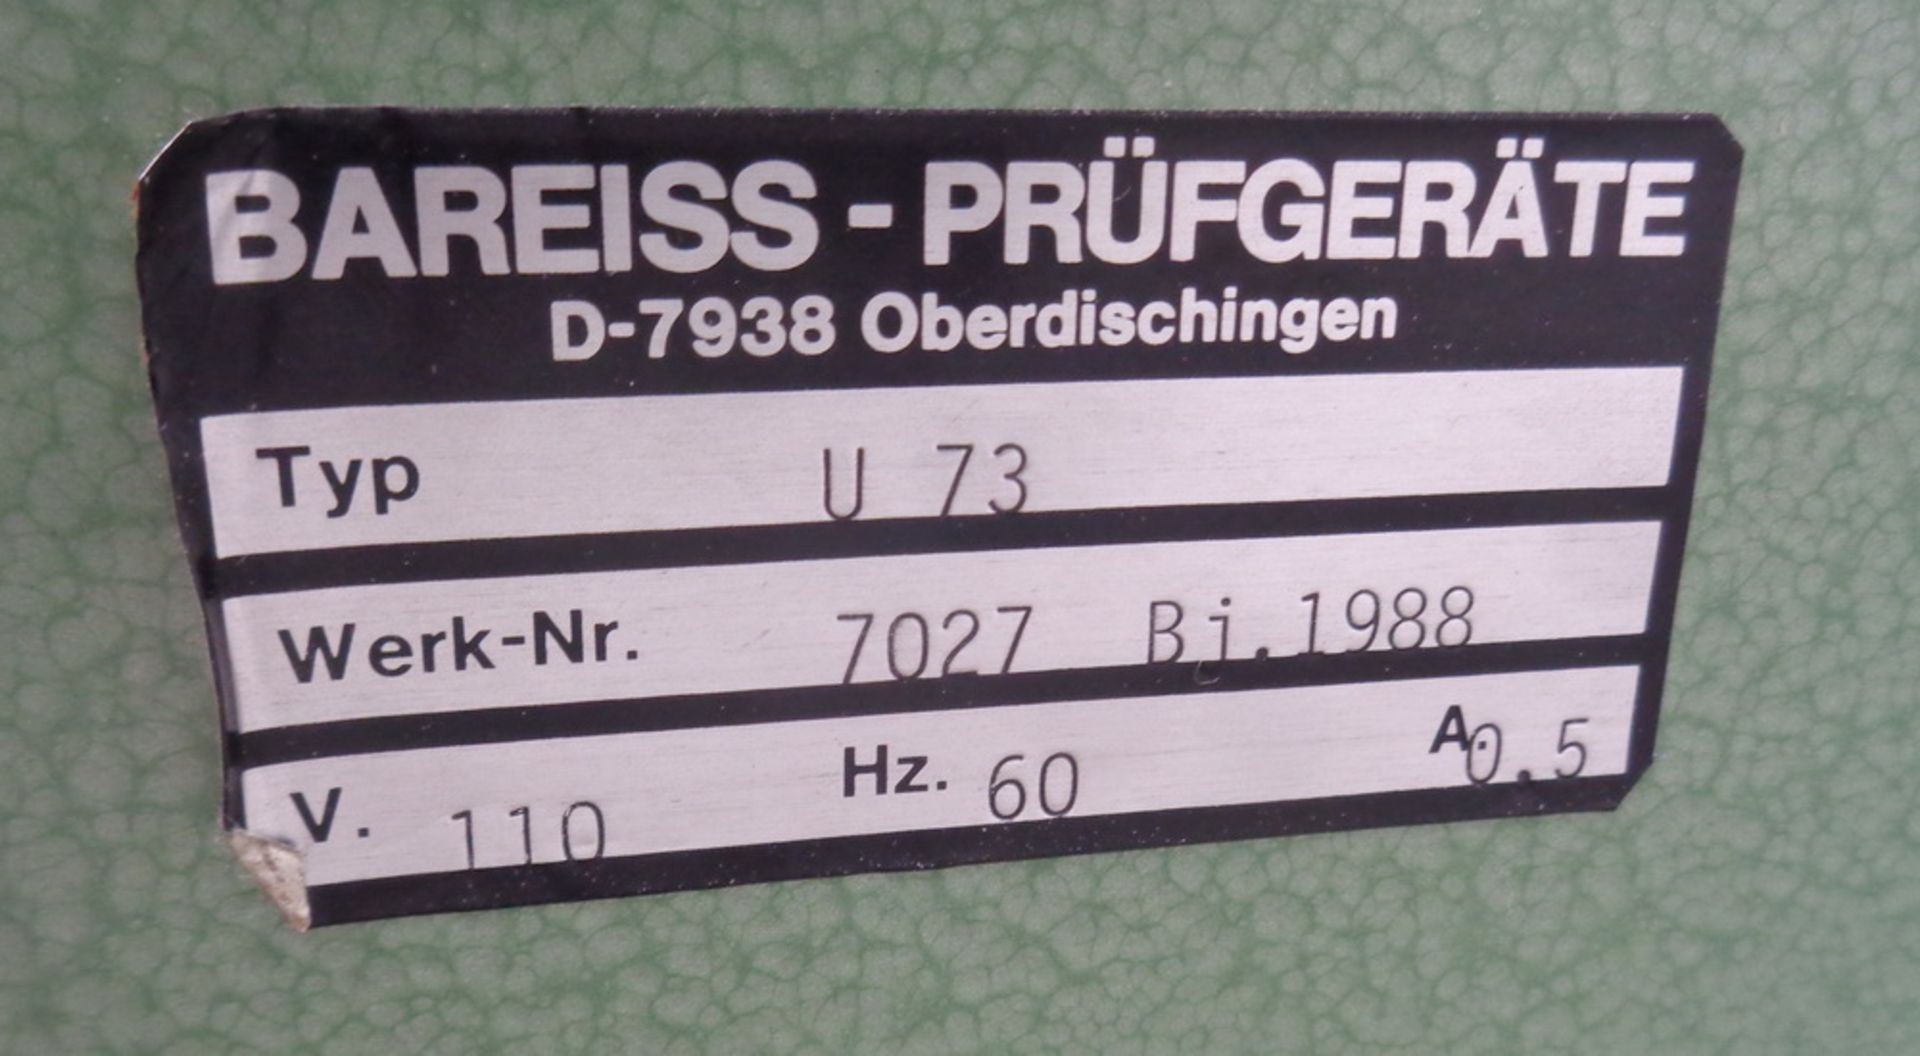 Bareiss Hardness Tester, Model U73, S/N 29658 - Image 3 of 3